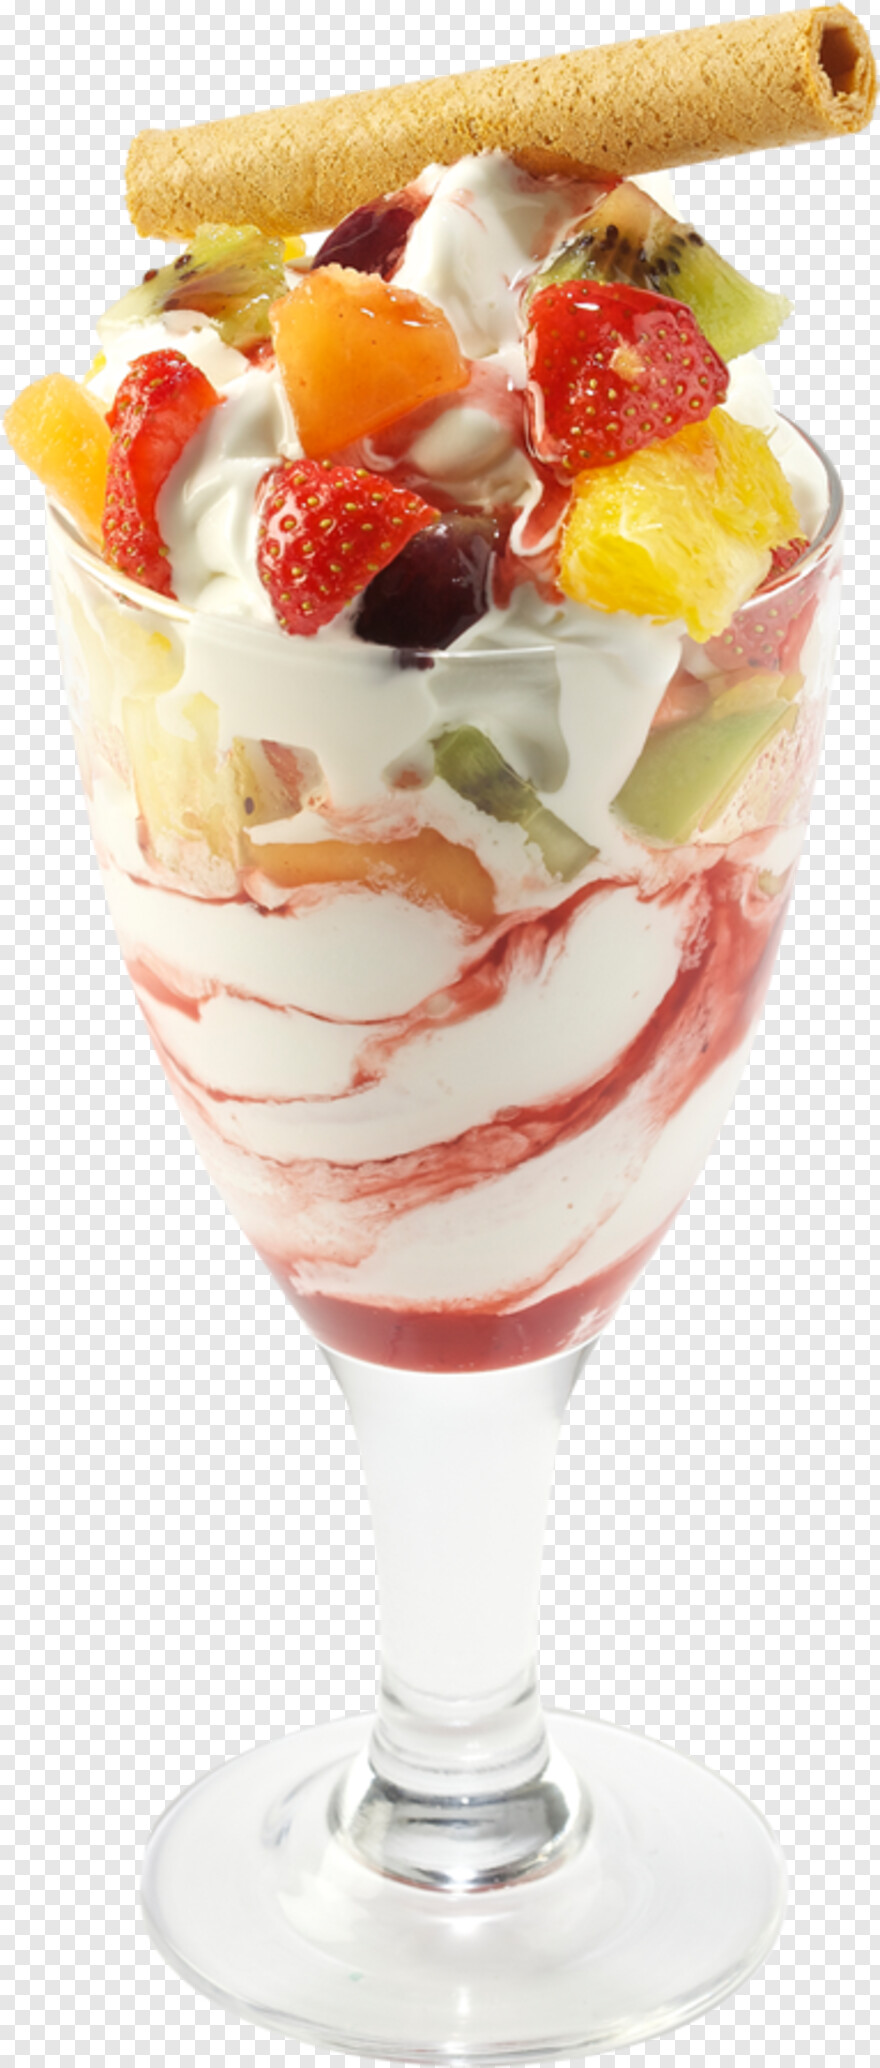 ice-cream-cone # 947381